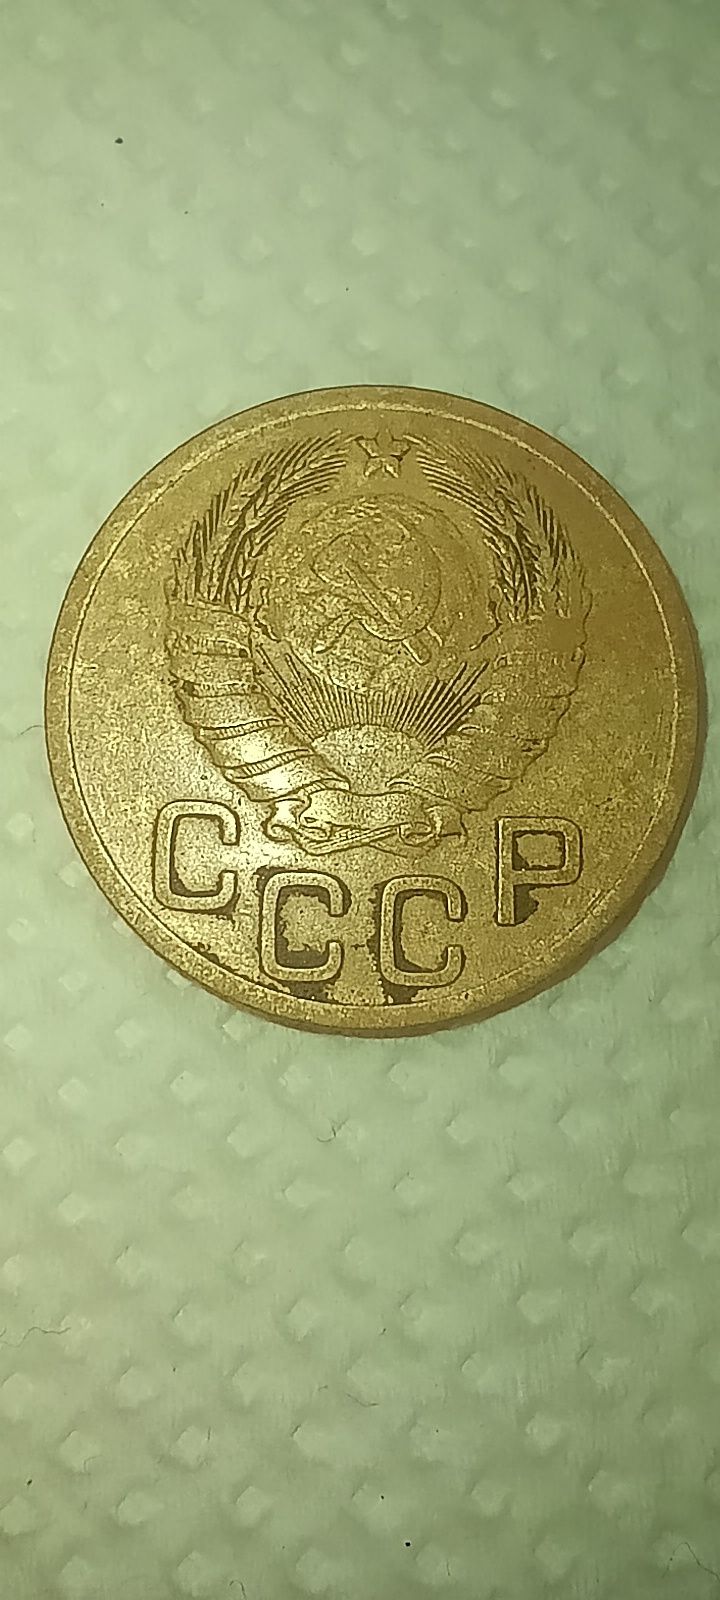 Продам монету 3 копійки 1946 року